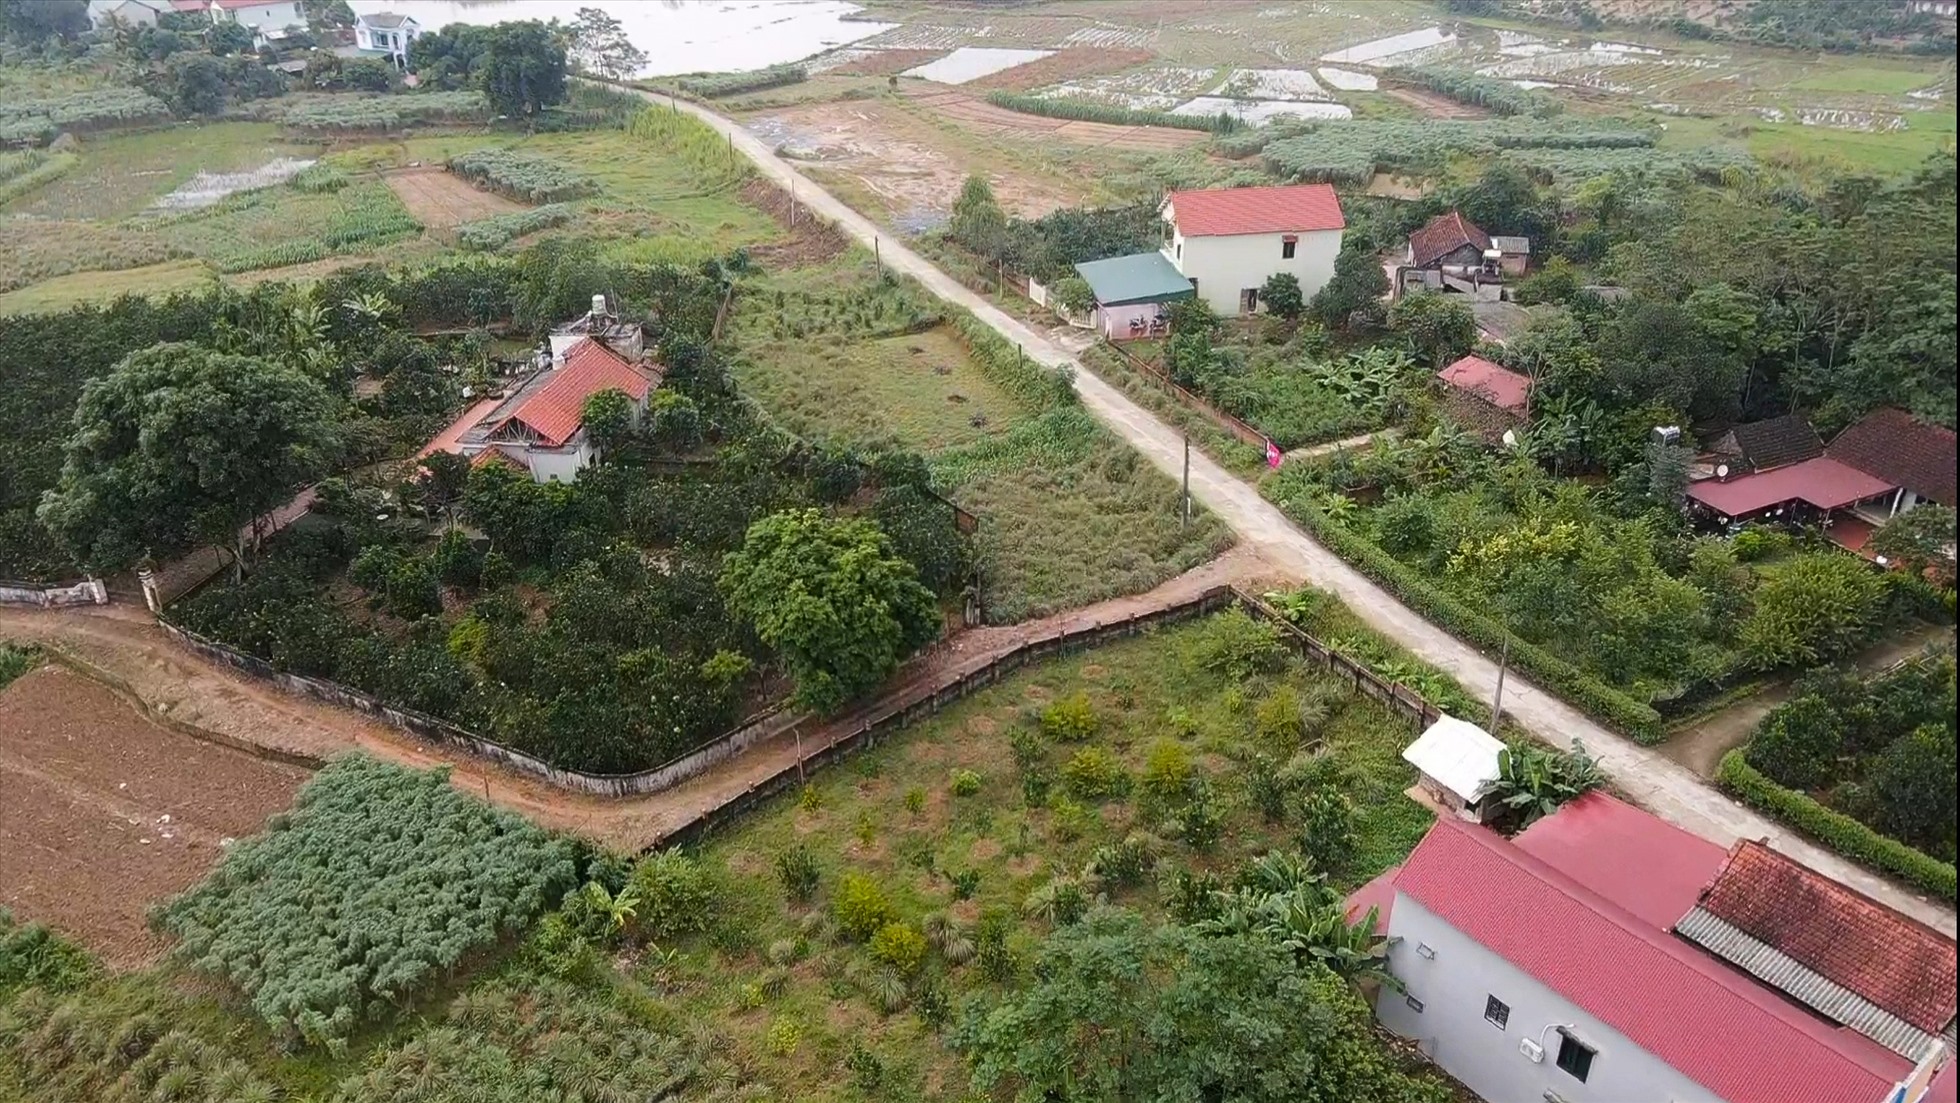 Hình ảnh ghi nhận tại huyện Tam Nông - tỉnh Phú Thọ. Ảnh: Phan Anh